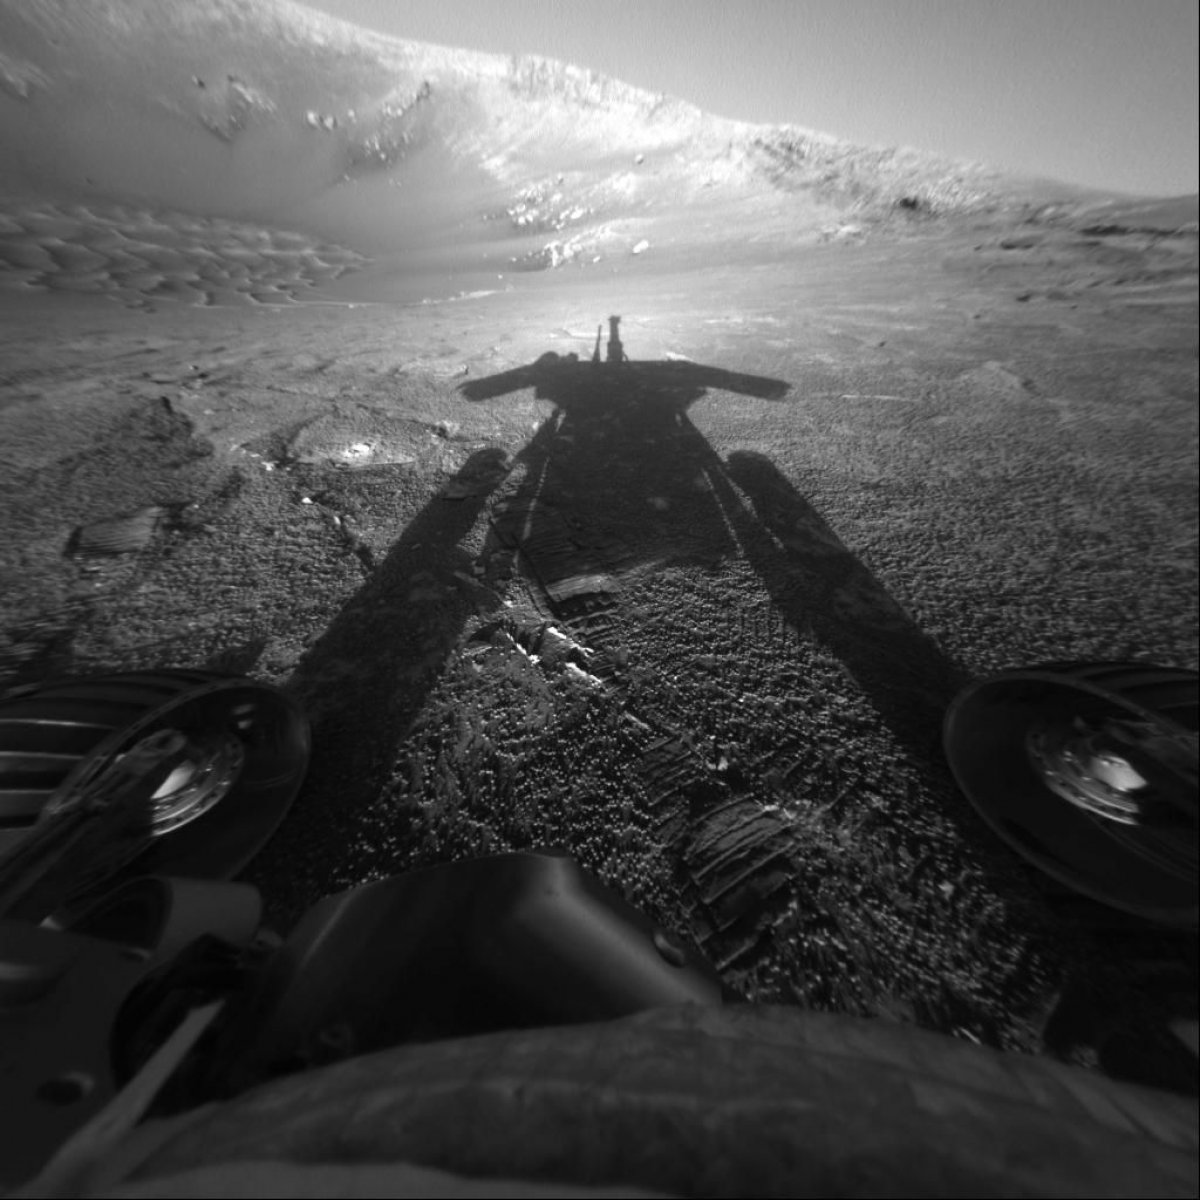 NASA, Mars, Opportunity rover